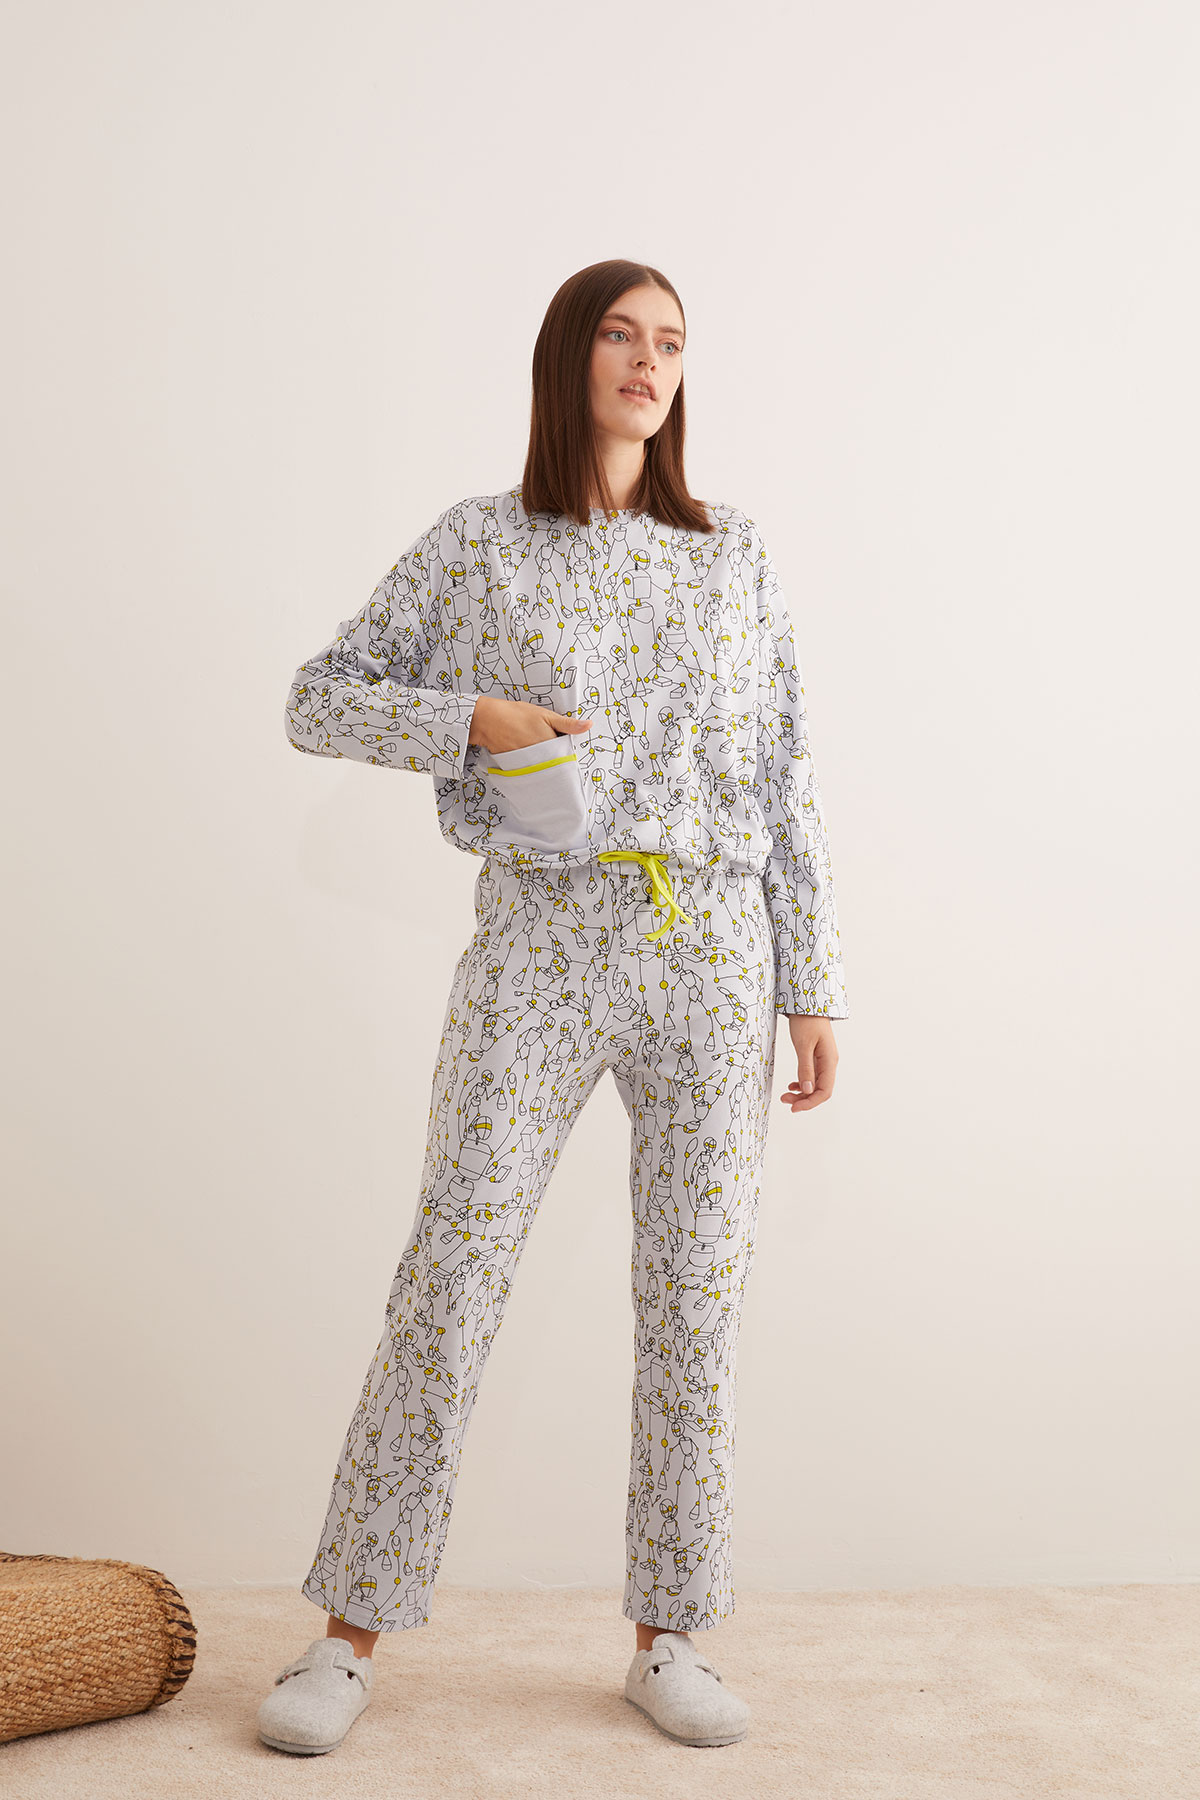 Kadın Pamuklu Beli Bağcıklı Uzun Pijama Takımı